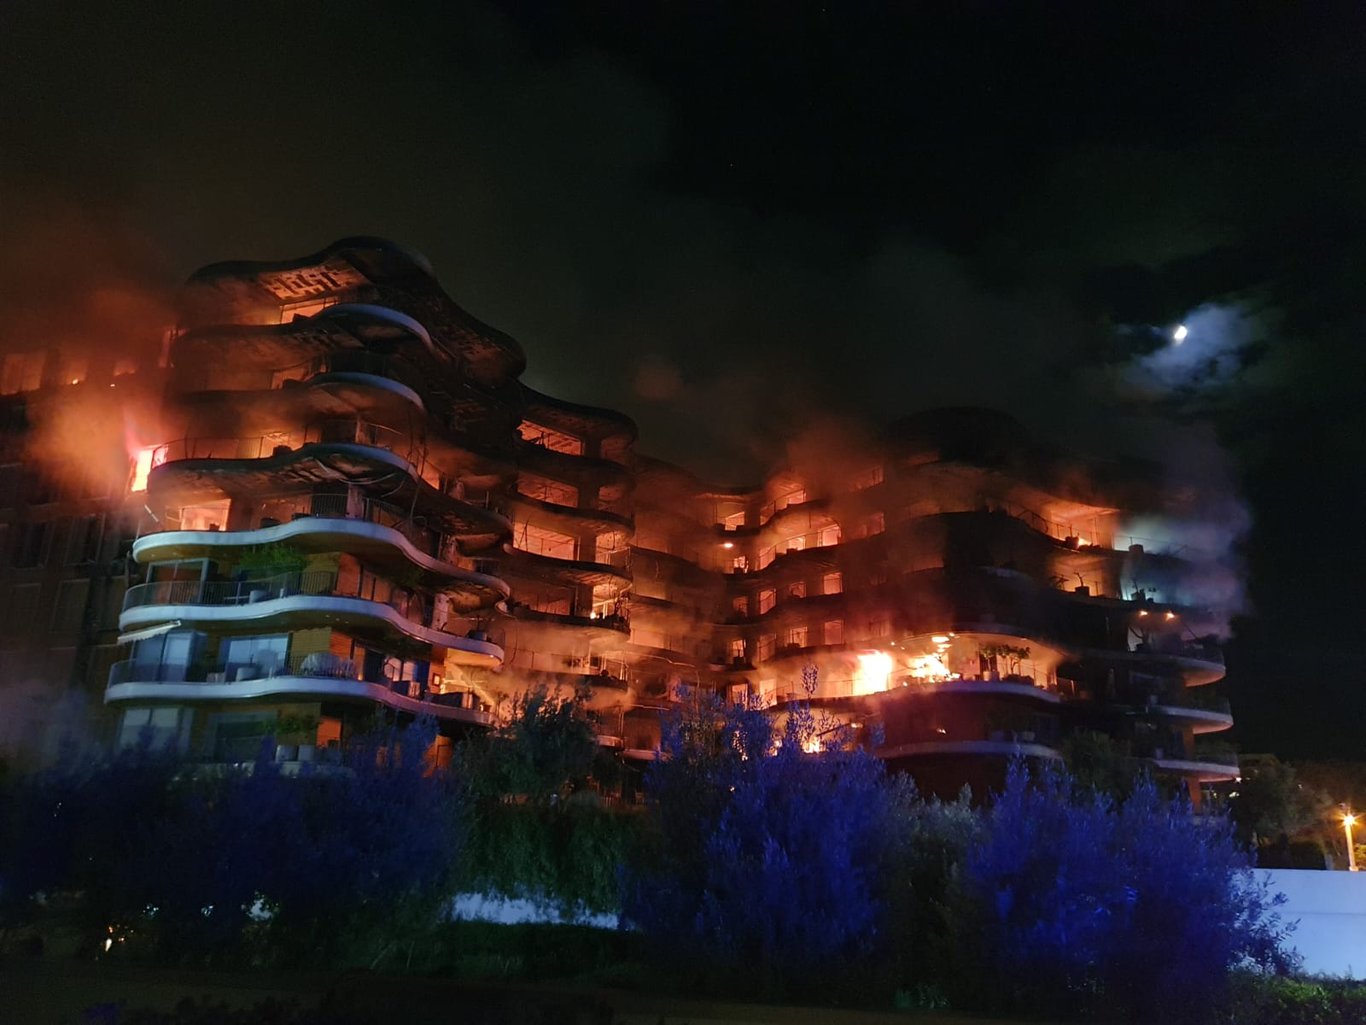 İZMİR YANGIN SON DAKİKA | İzmir Narlıdere'deki Folkart Sitesi'nde yangın çıktı: Can kaybı yaşanmadı, yaralı sayısı 7 oldu! (Yangında son durum nedir?)